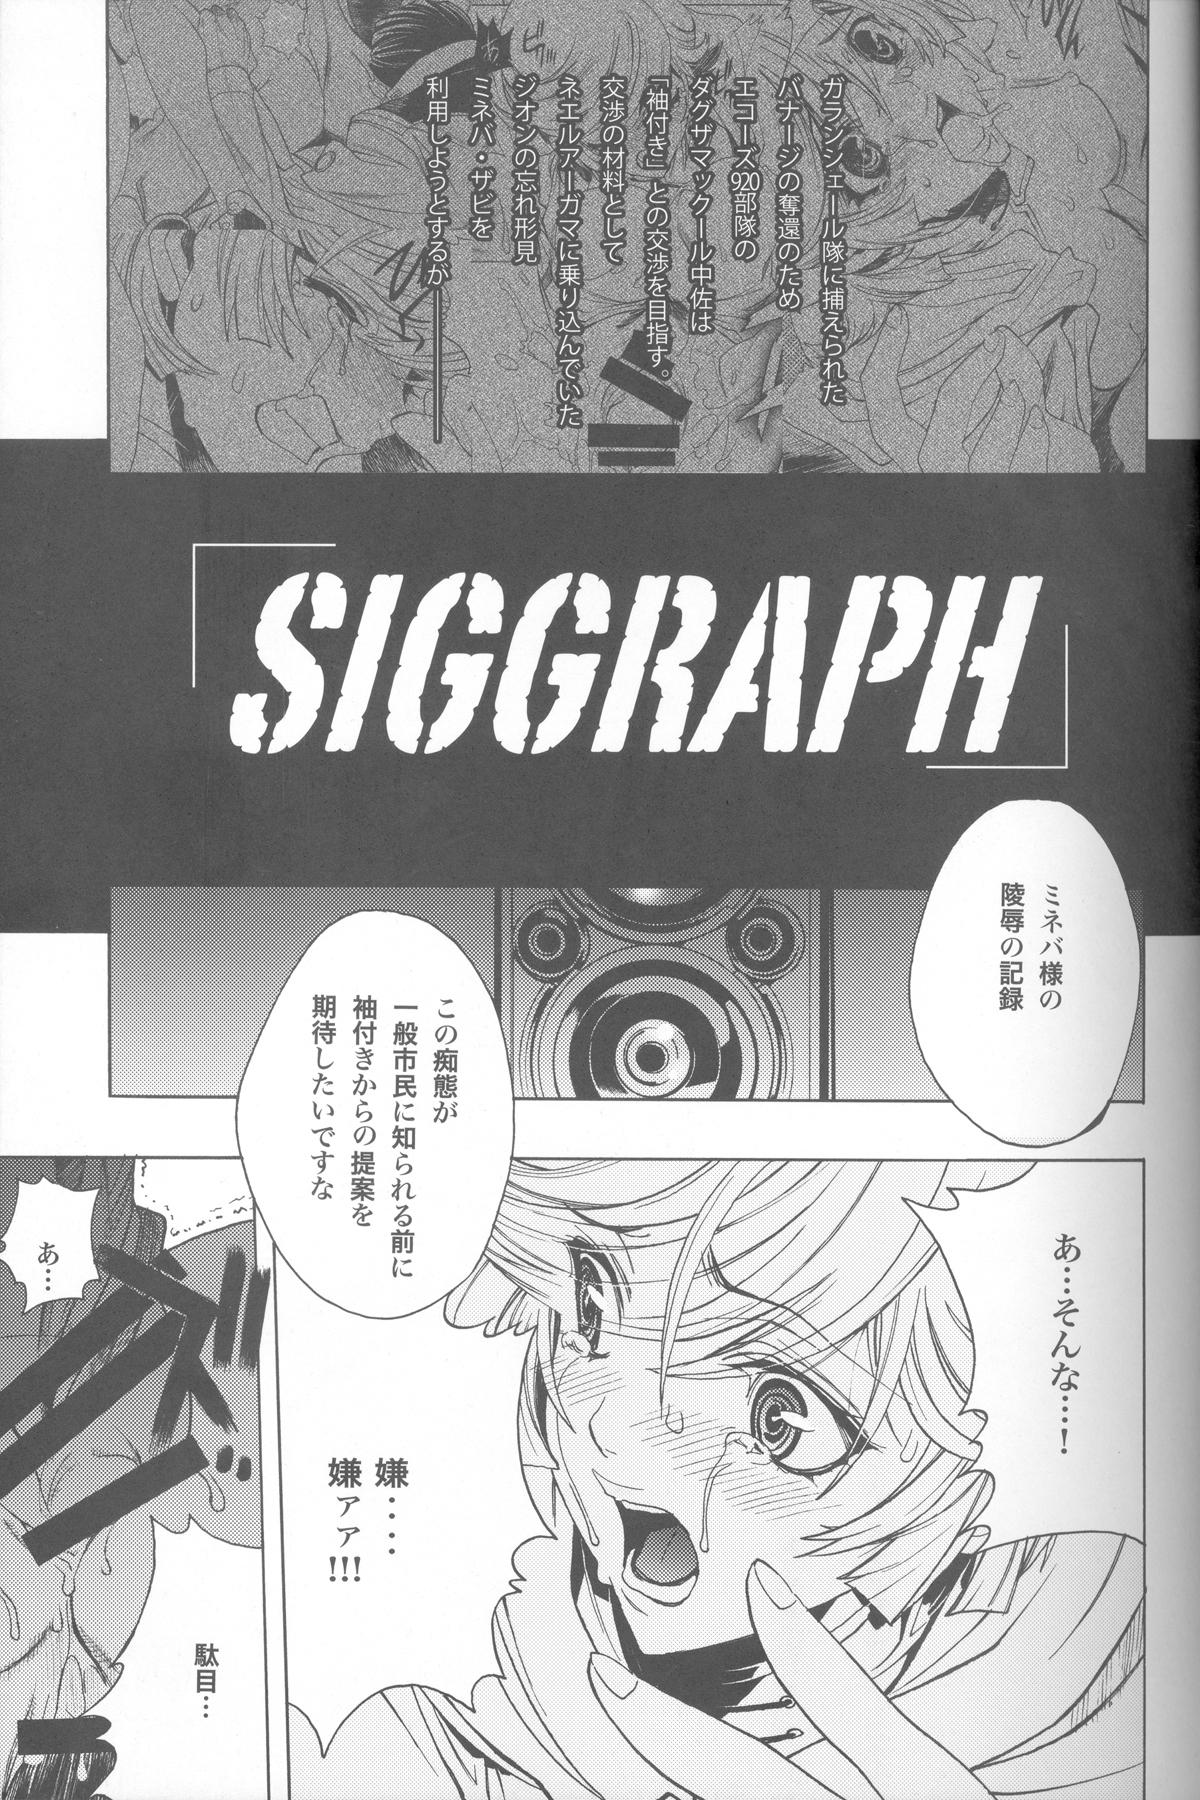 Chick SIGGRAPH - Gundam unicorn Chick - Page 4